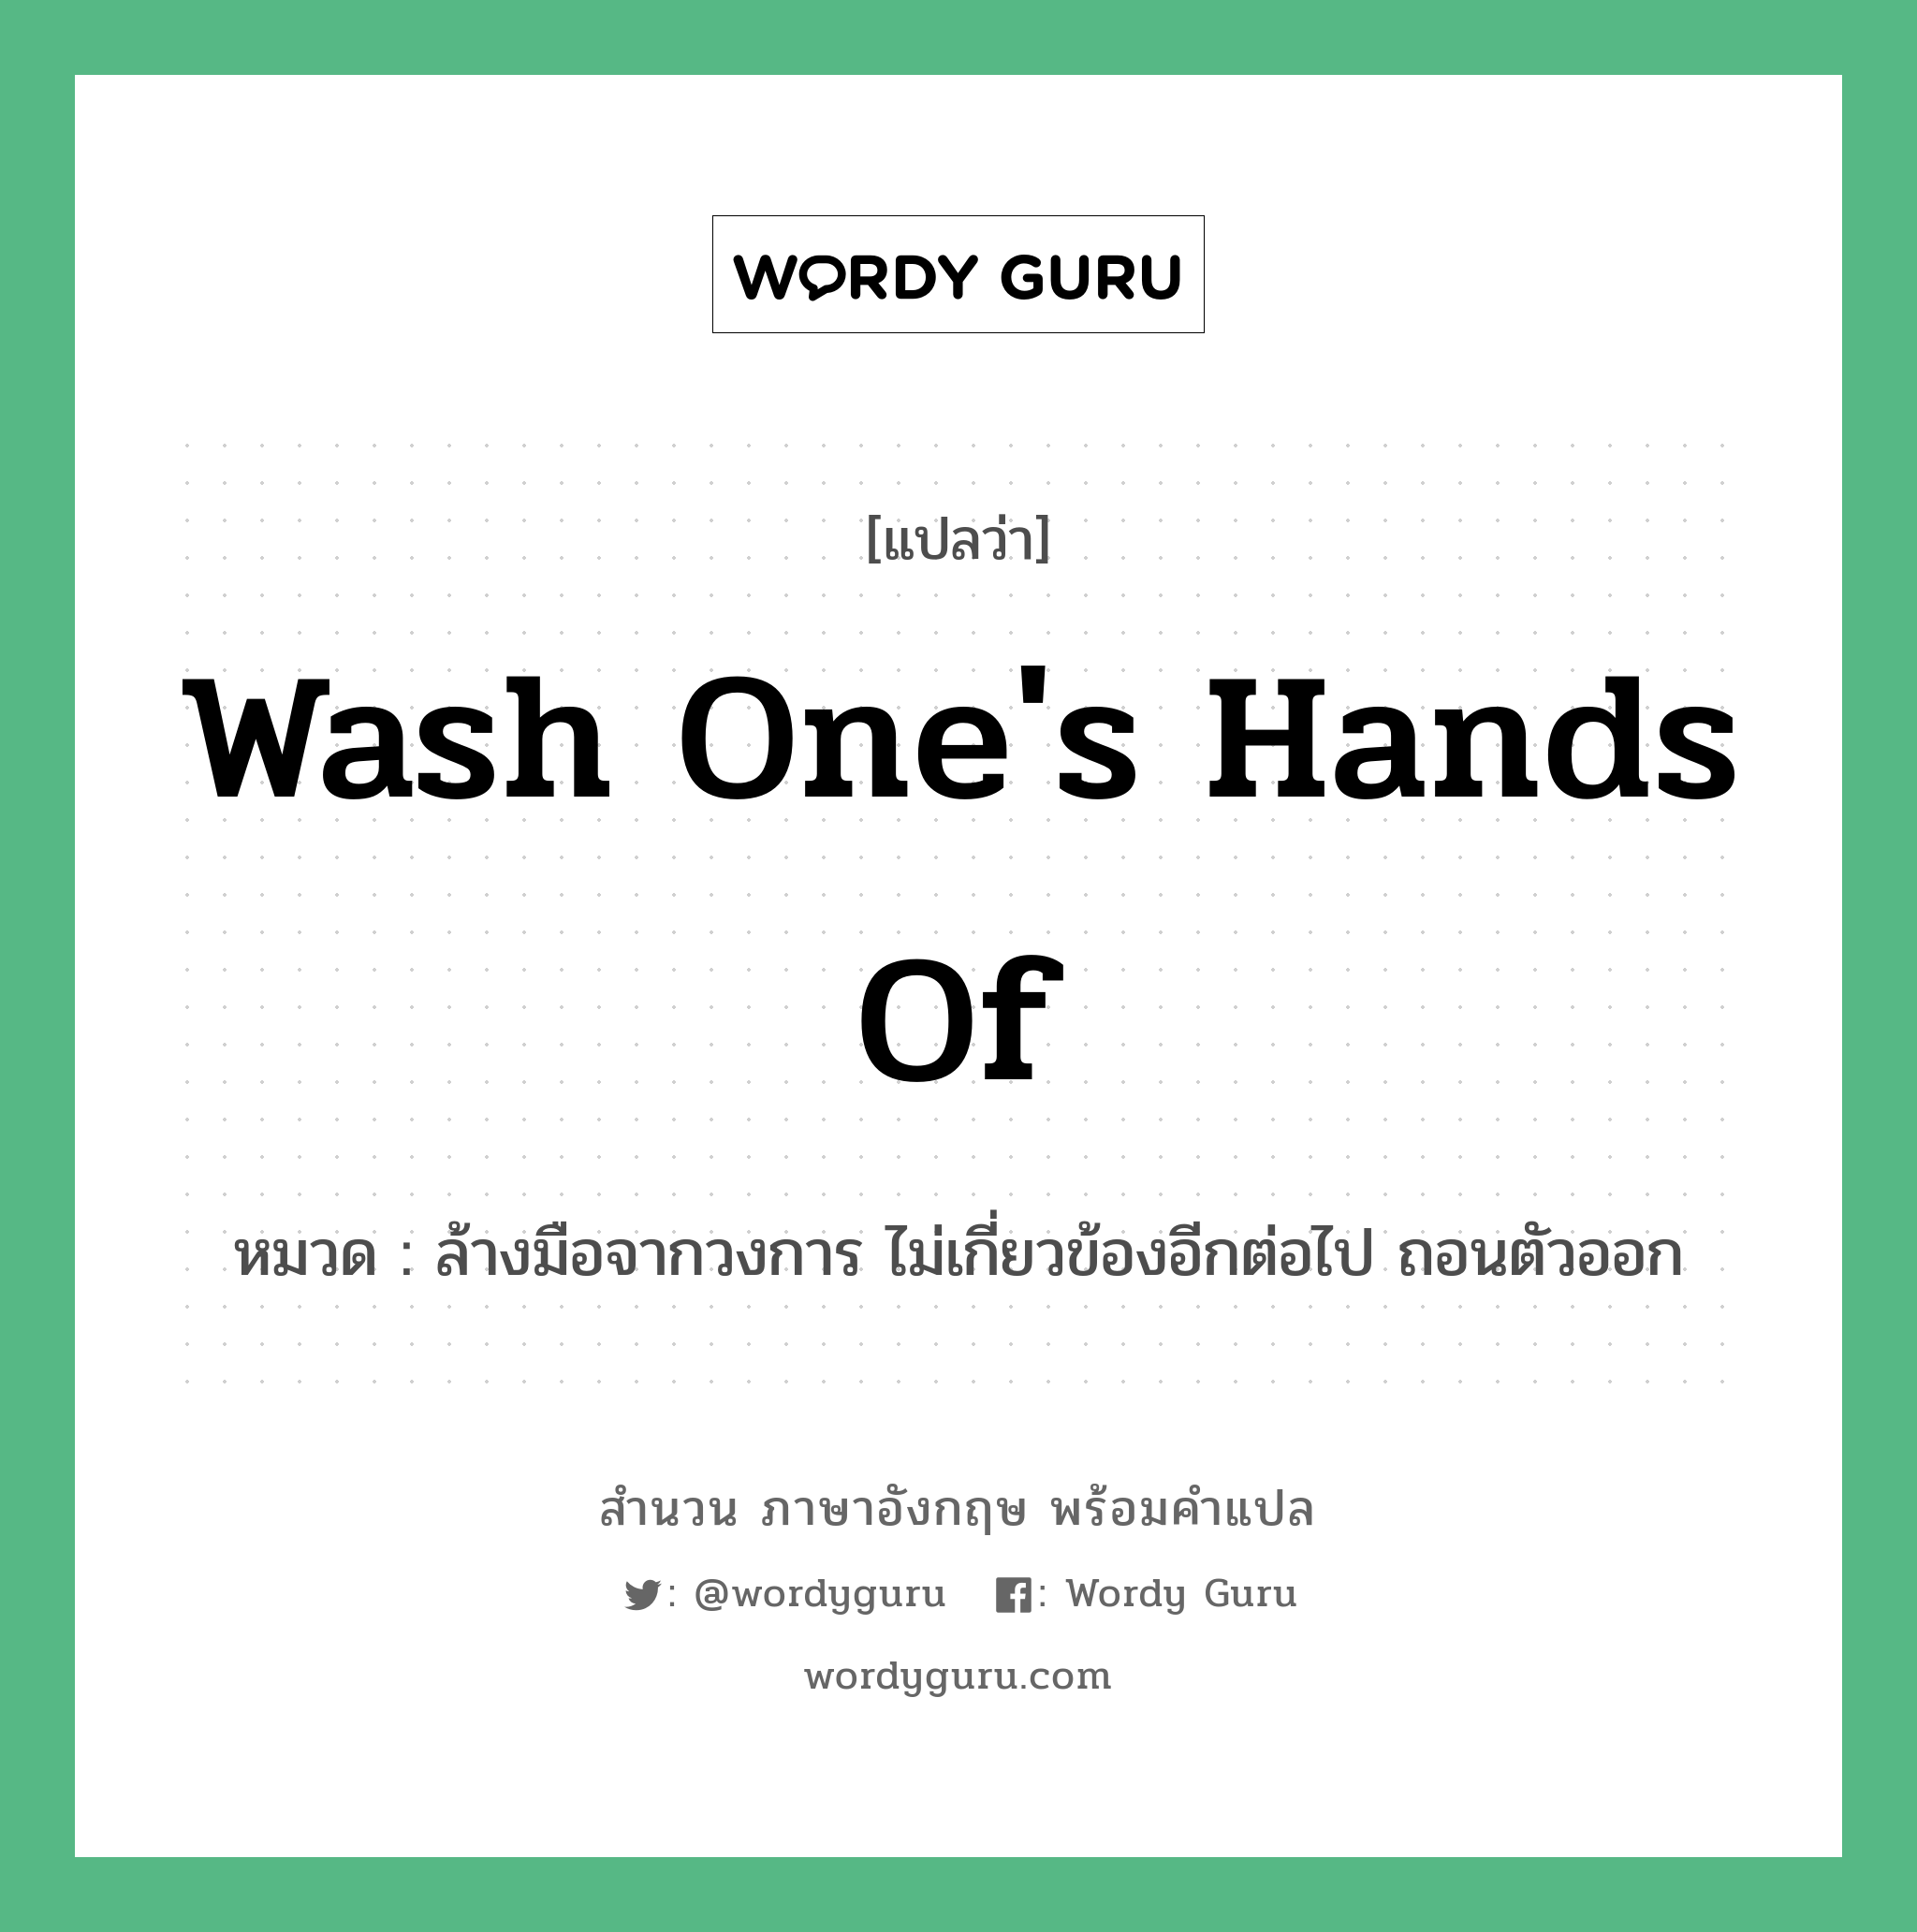 Wash one's hands of แปลว่า?, สำนวนภาษาอังกฤษ Wash one's hands of หมวด ล้างมือจากวงการ ไม่เกี่ยวข้องอีกต่อไป ถอนตัวออก